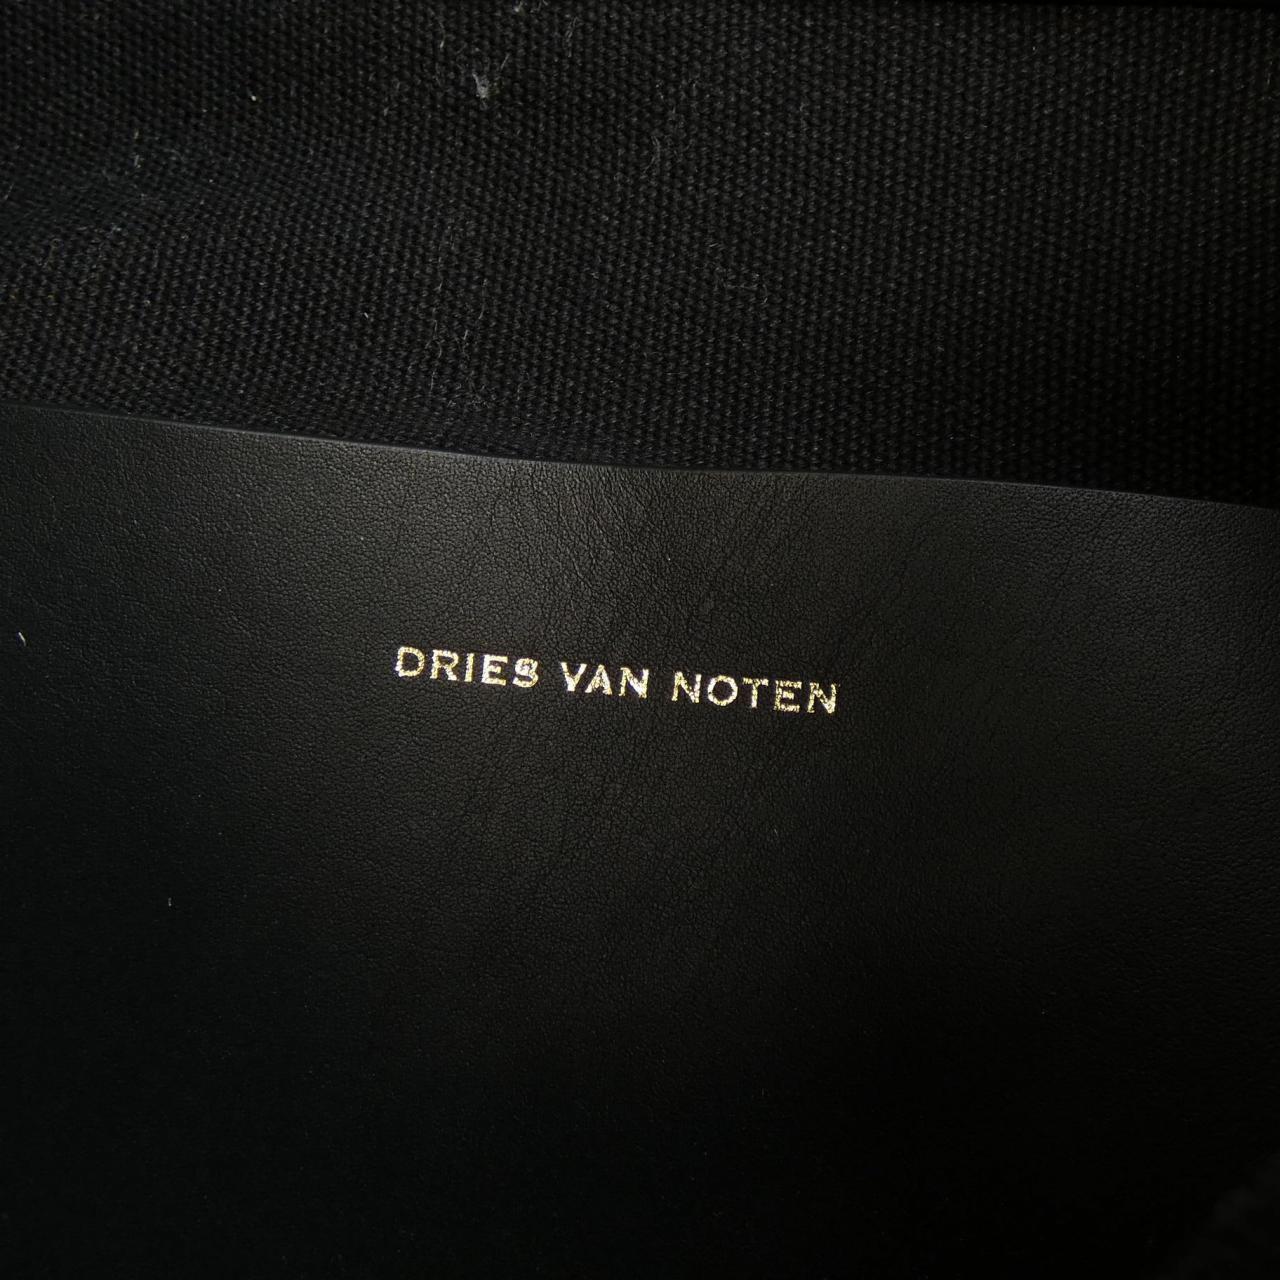 德賴斯·範諾DRIES VAN NOTEN德賴斯·範諾頓 (Dries Van Noten) 背包